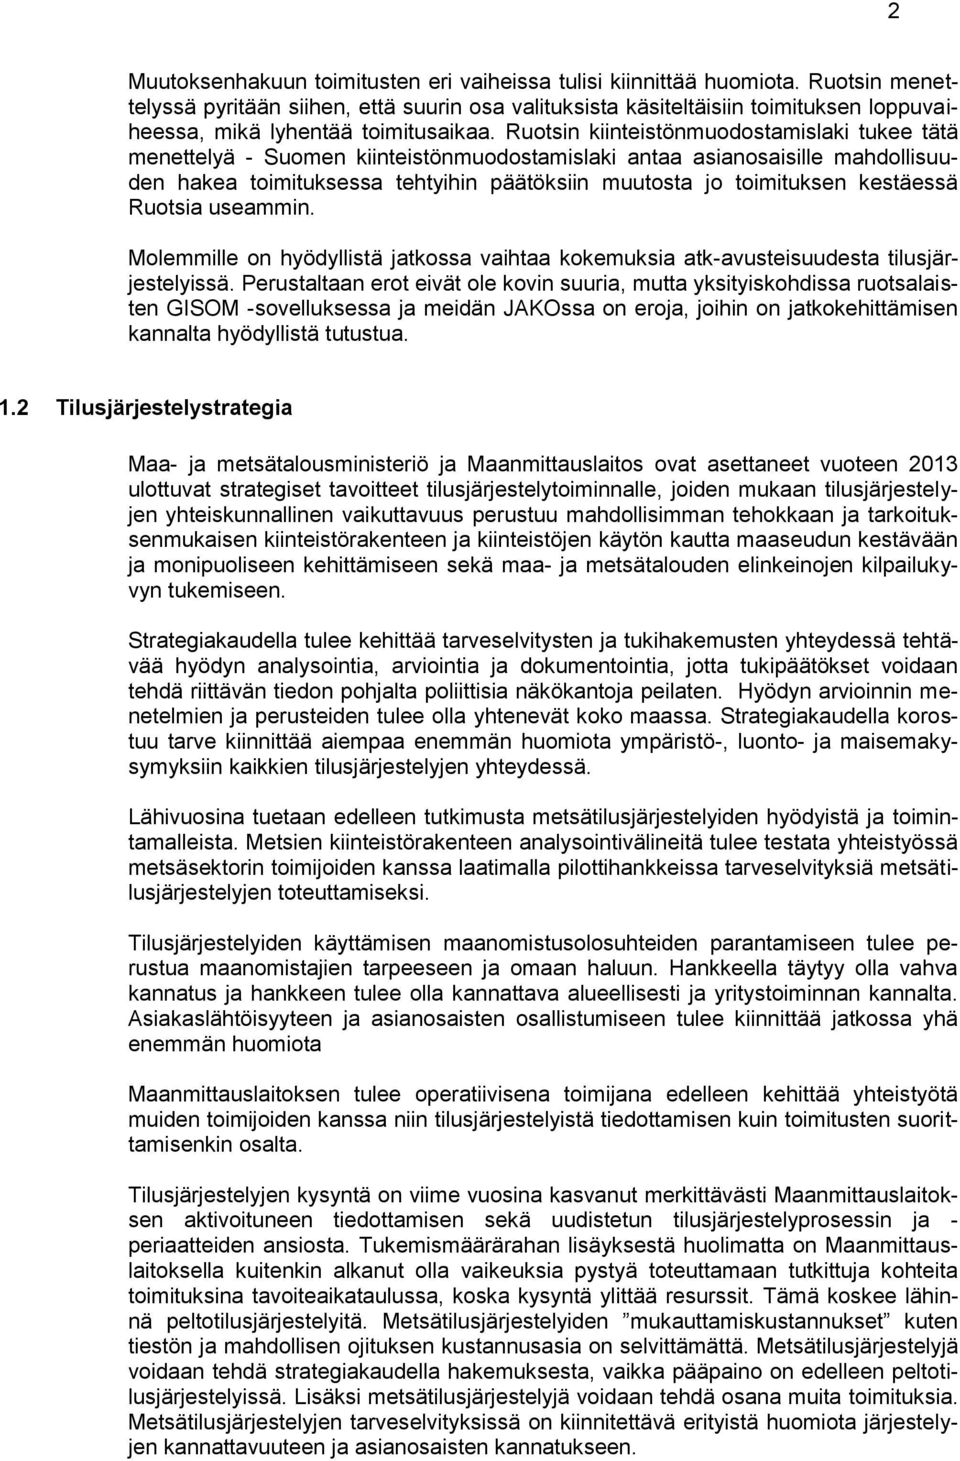 Ruotsin kiinteistönmuodostamislaki tukee tätä menettelyä - Suomen kiinteistönmuodostamislaki antaa asianosaisille mahdollisuuden hakea toimituksessa tehtyihin päätöksiin muutosta jo toimituksen